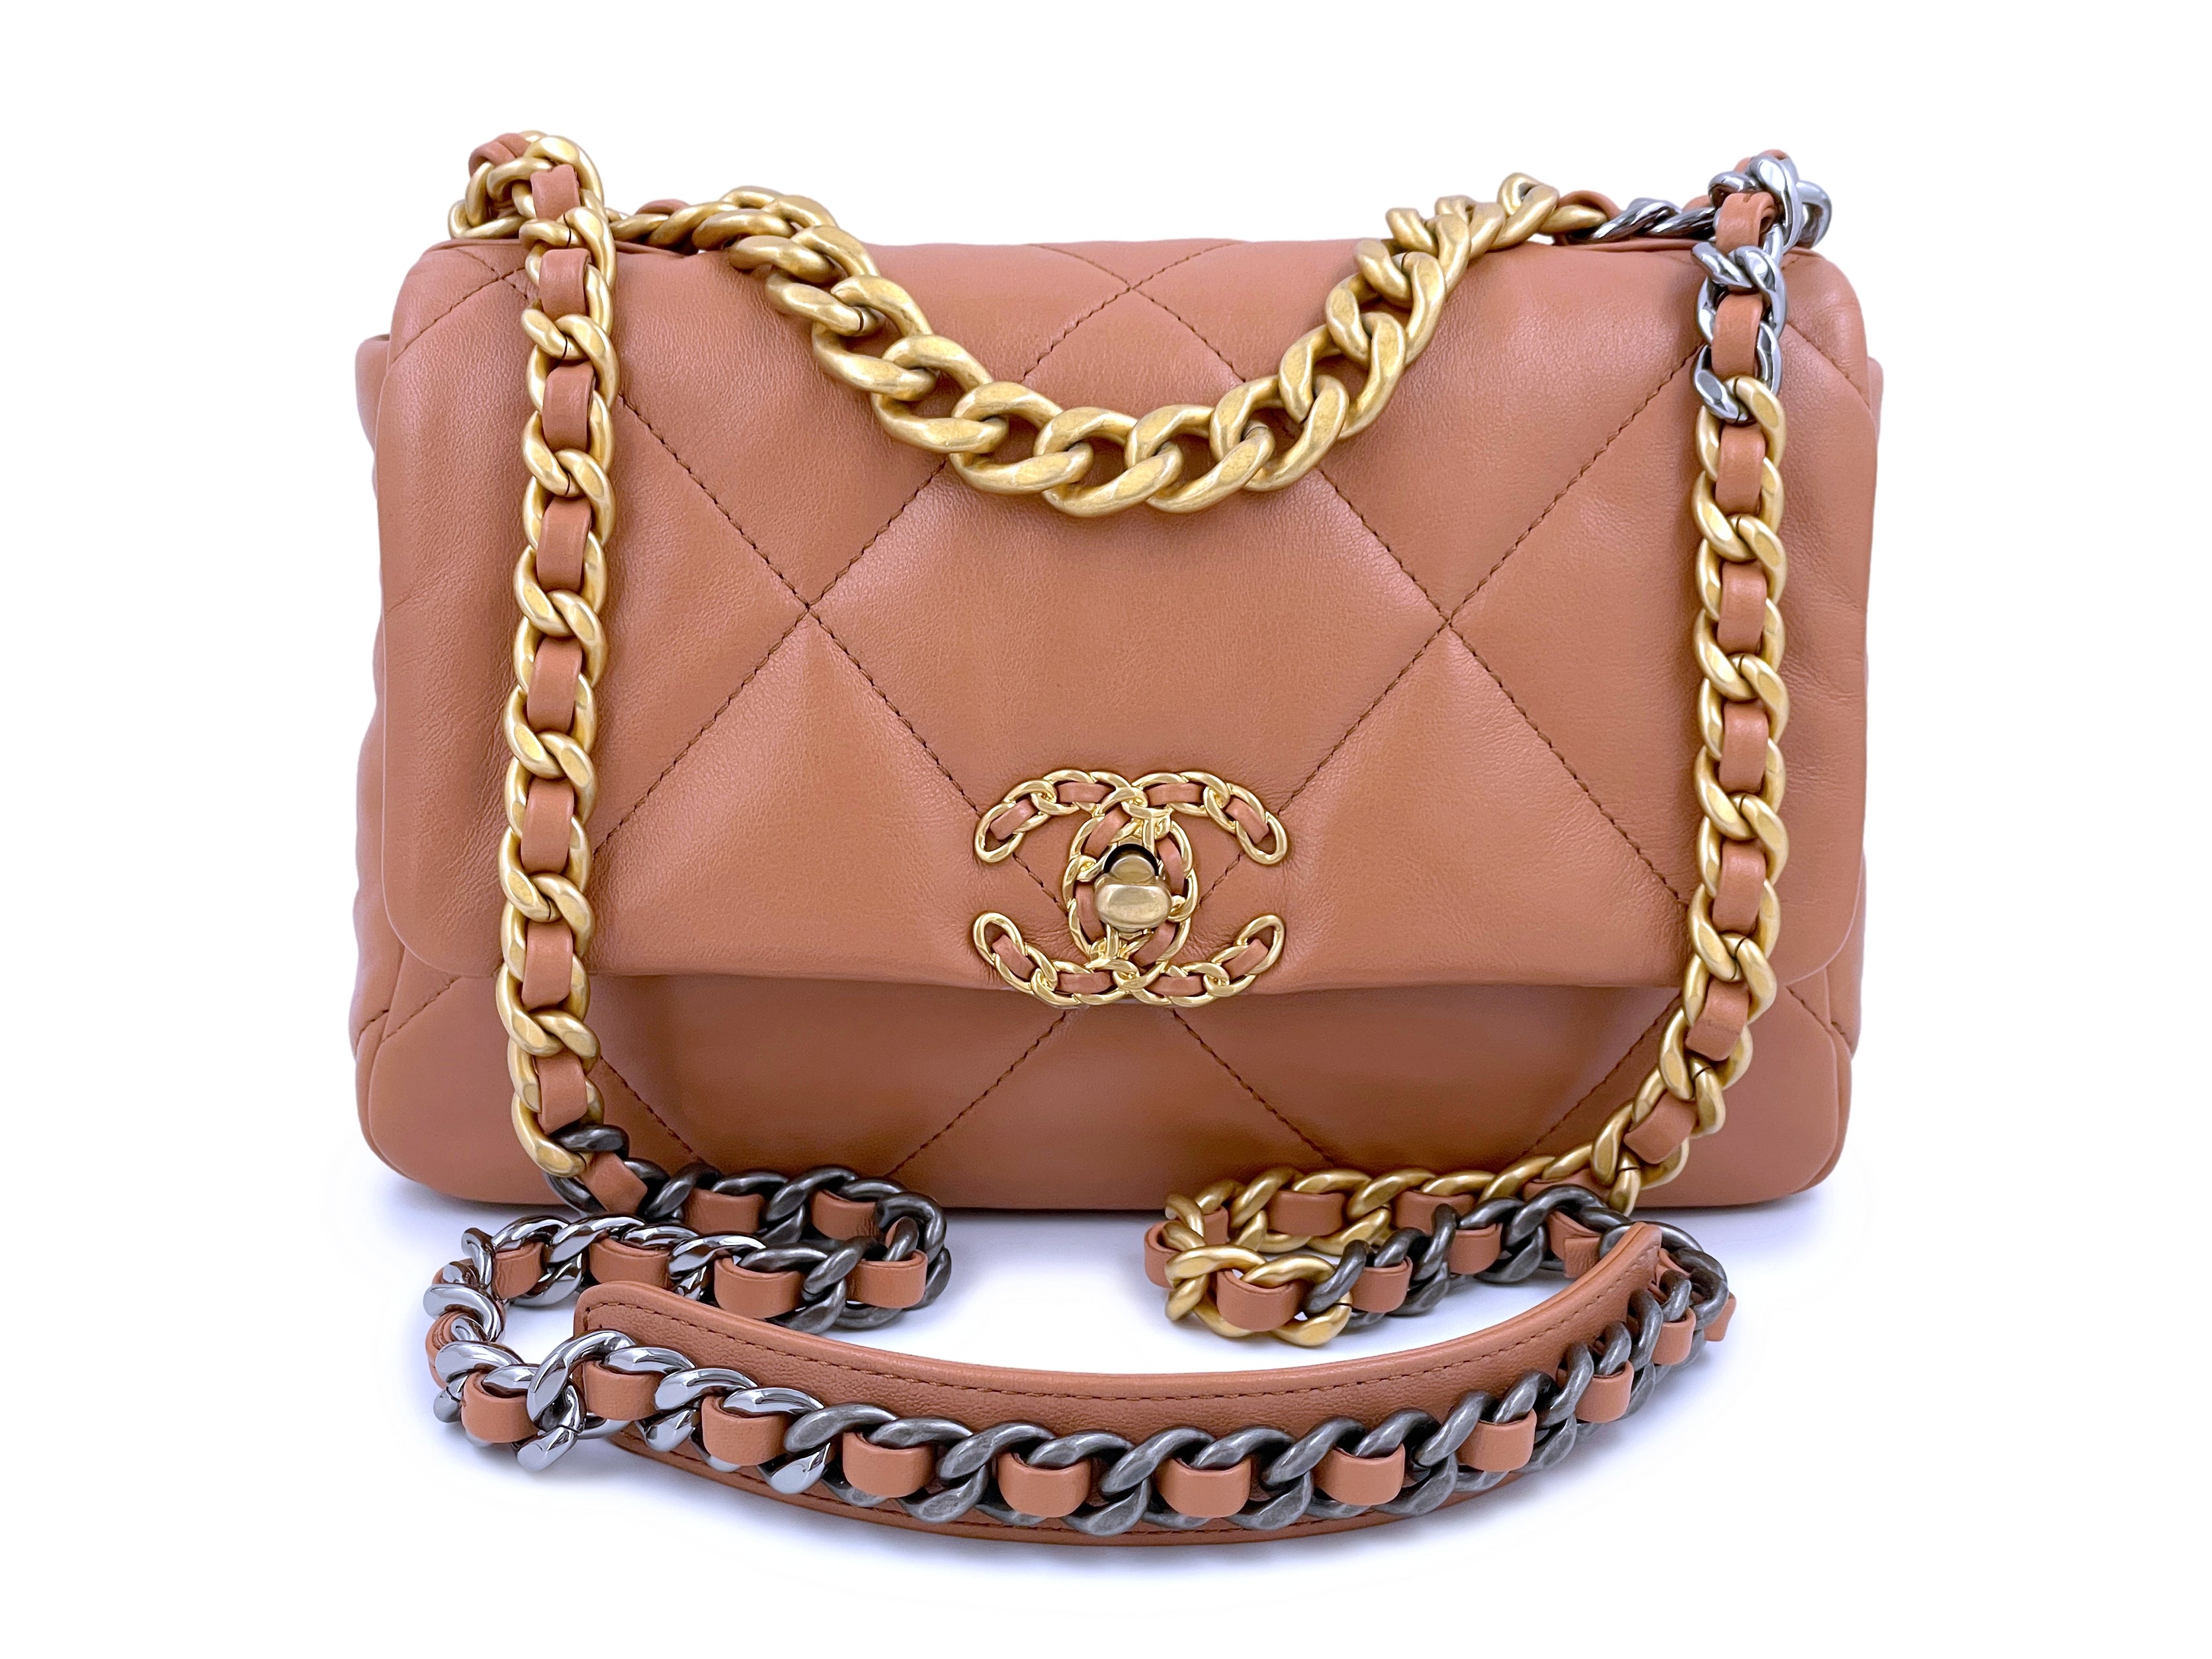 Chanel Chanel 19 Medium Flap Bag in 21K Caramel Lambskin | Dearluxe